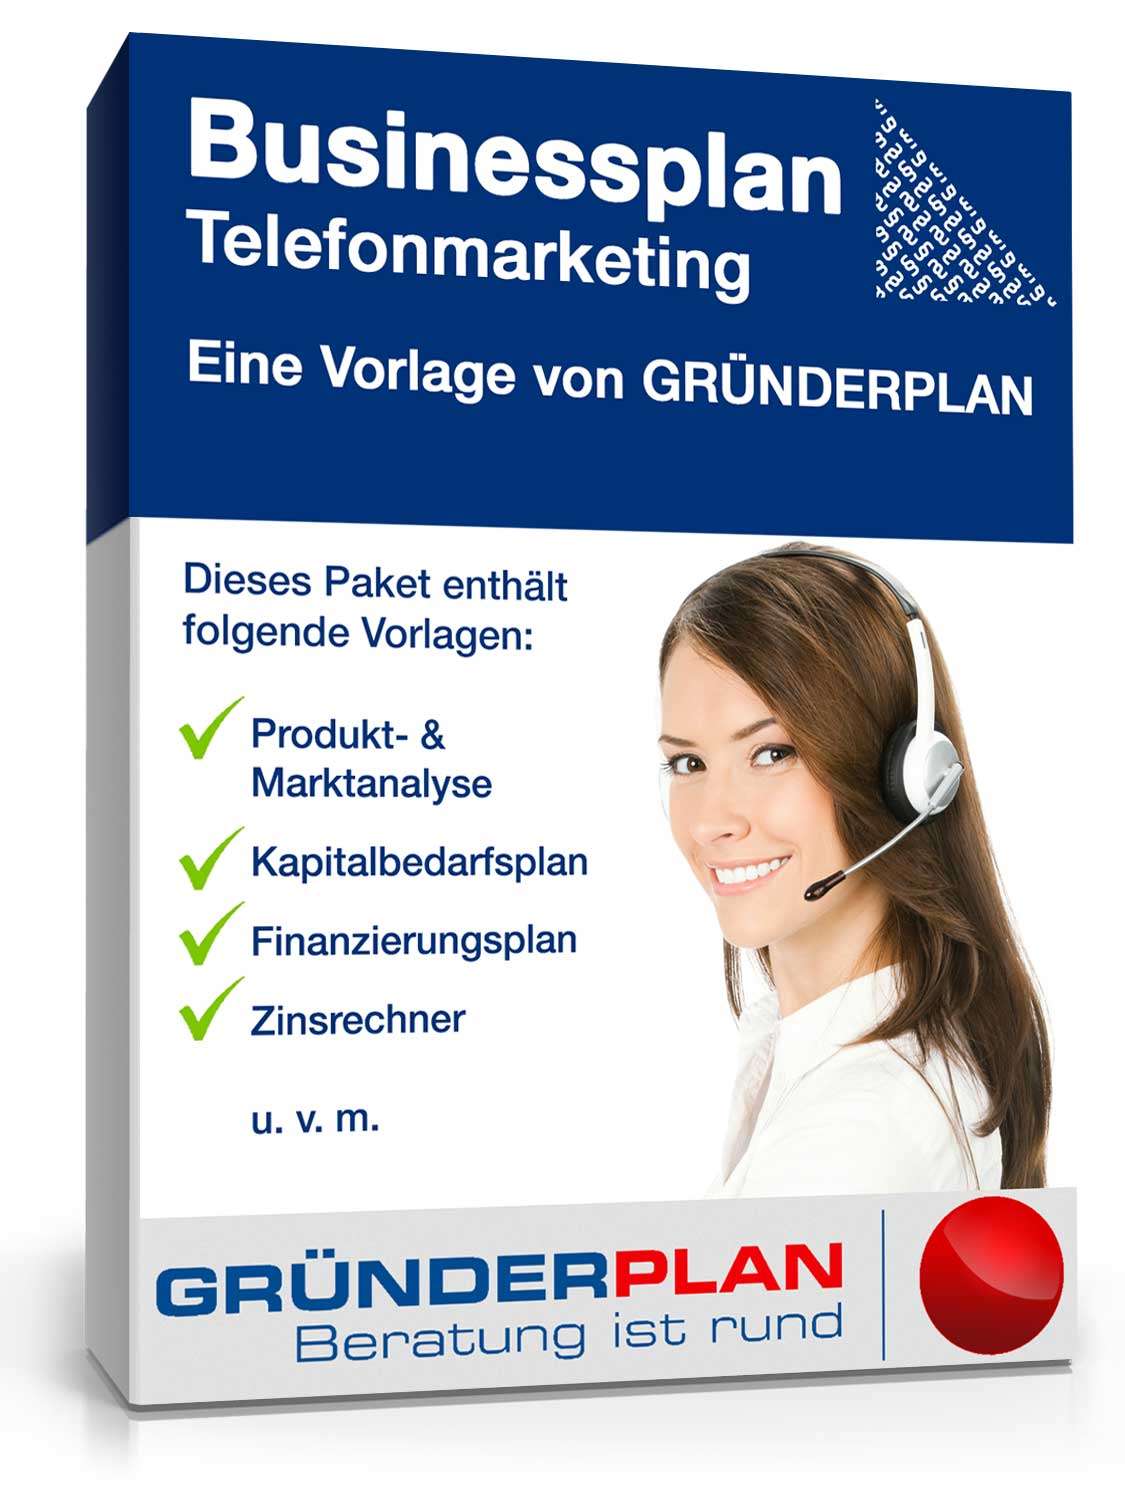 Hauptbild des Produkts: Businessplan Telefonmarketing von Gründerplan